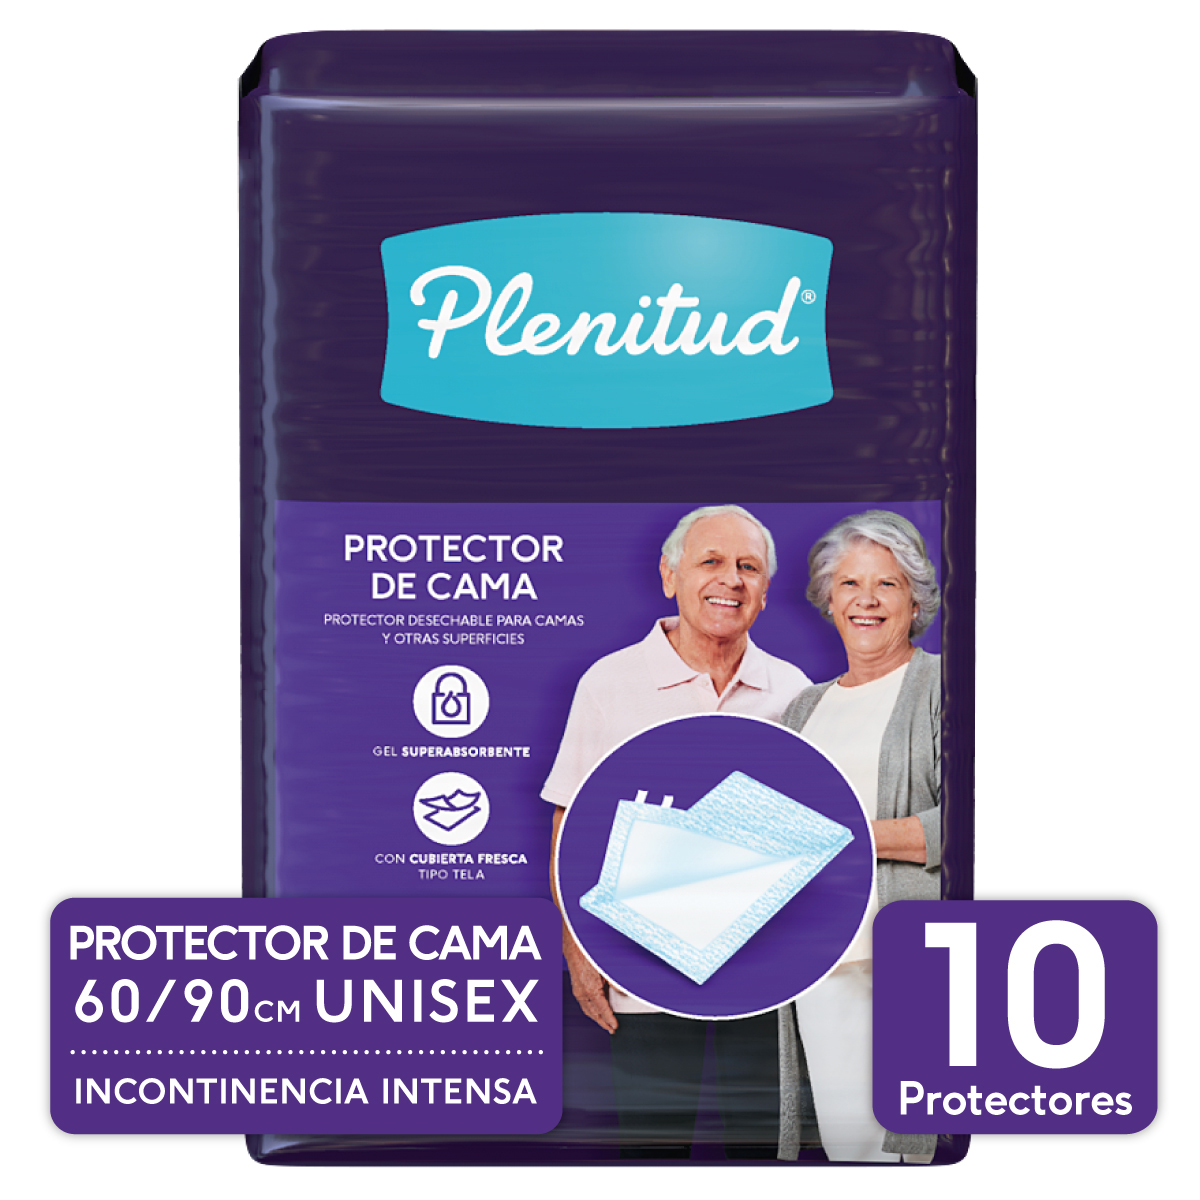 Protector de Cama Plenitud - 10 Unidades - 907597